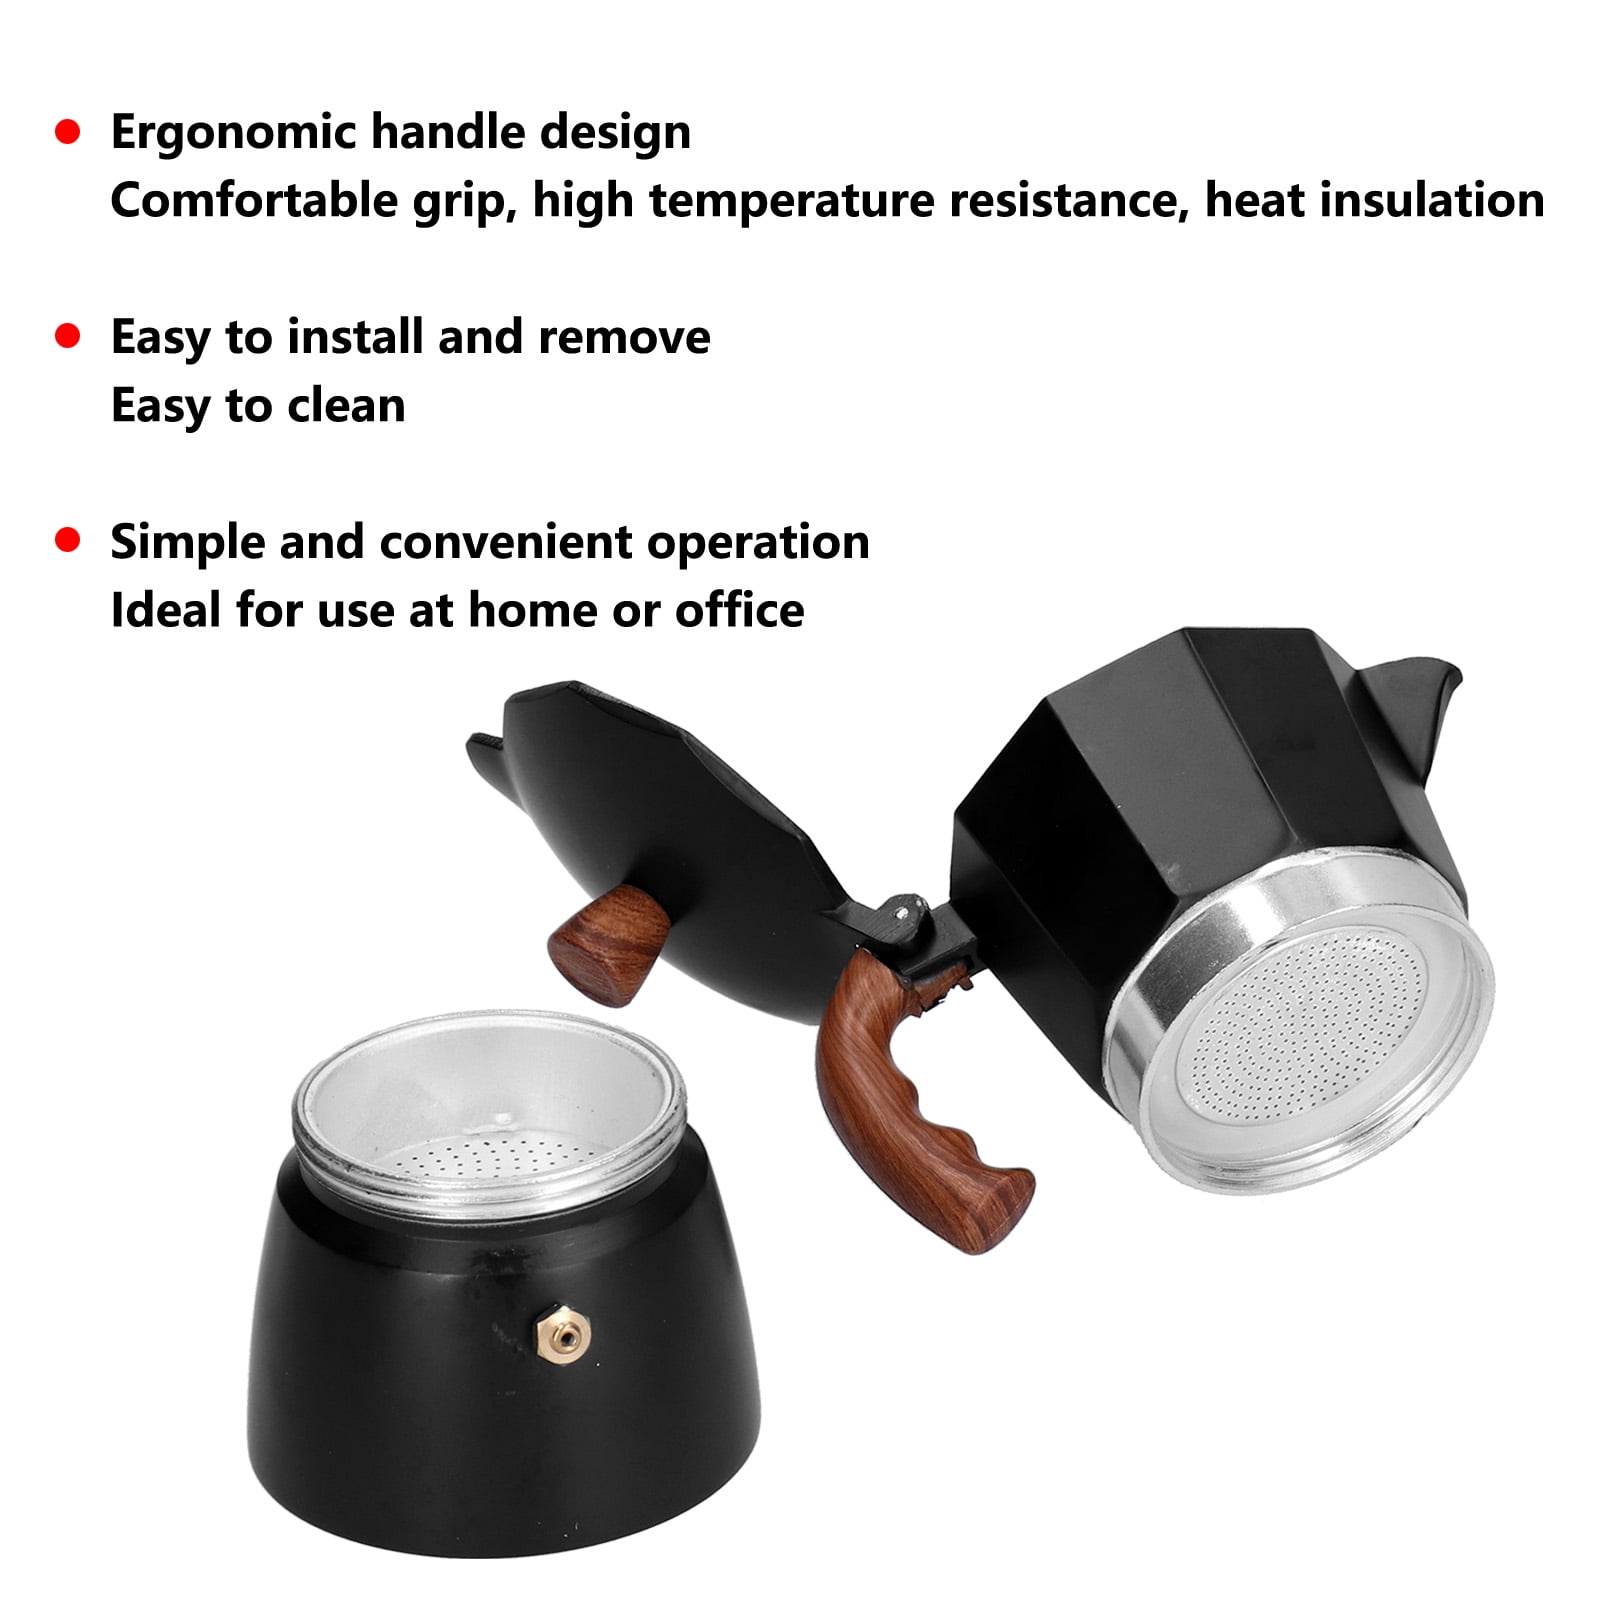 Bruntmor Espresso Coffee Maker - Manual Espresso Coffee Machine - Portable  Coffee Brewer, Moka Pot, Coffee Percolator - Stovetop Coffee Maker for